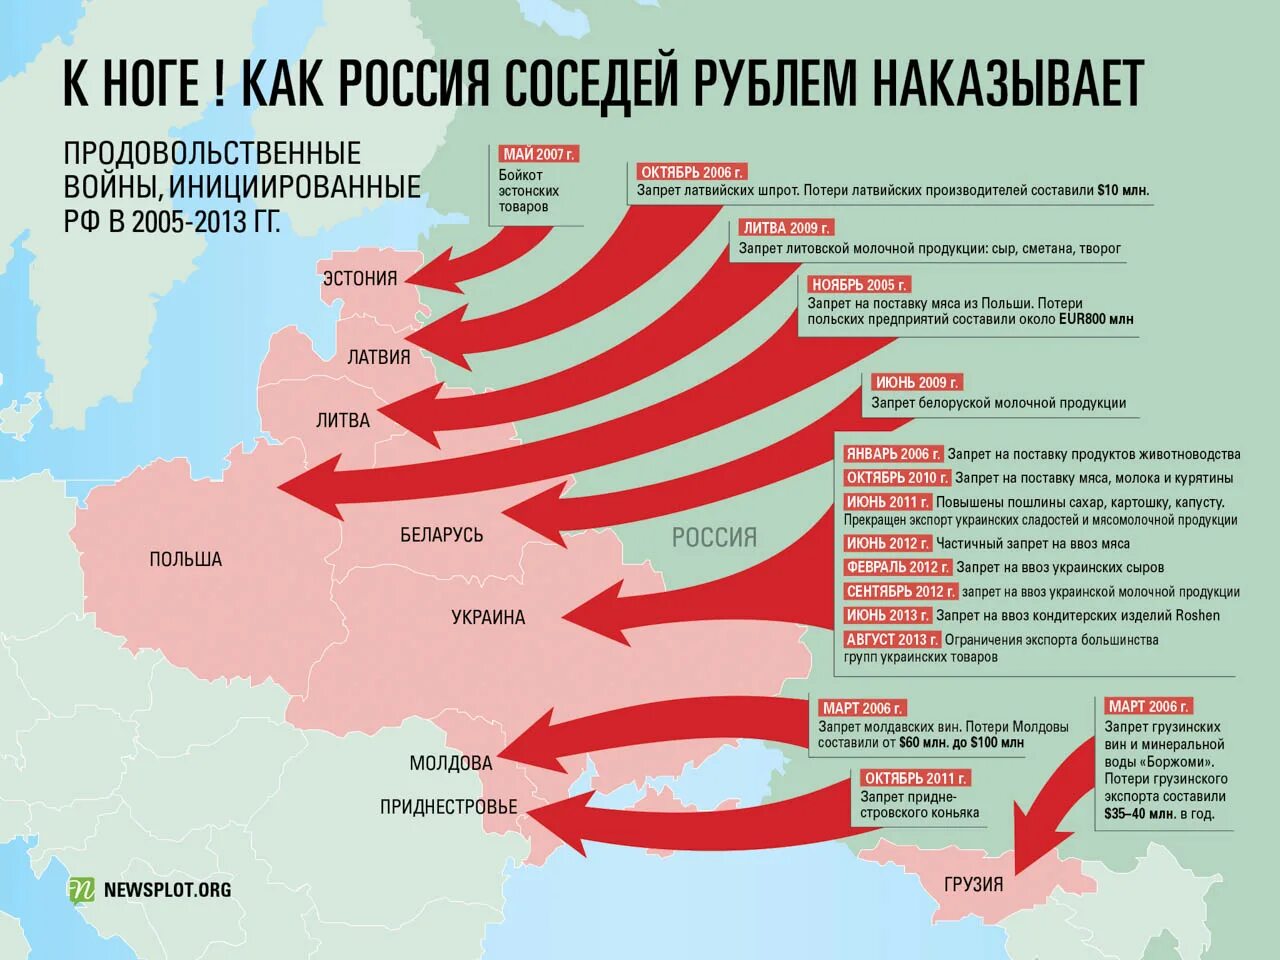 Сценарий военной операции. План вторжения на Украину. Карта вайна Росси в Украину. Стары которые воюют с Украиной. Государство, с которым воевала Россия.